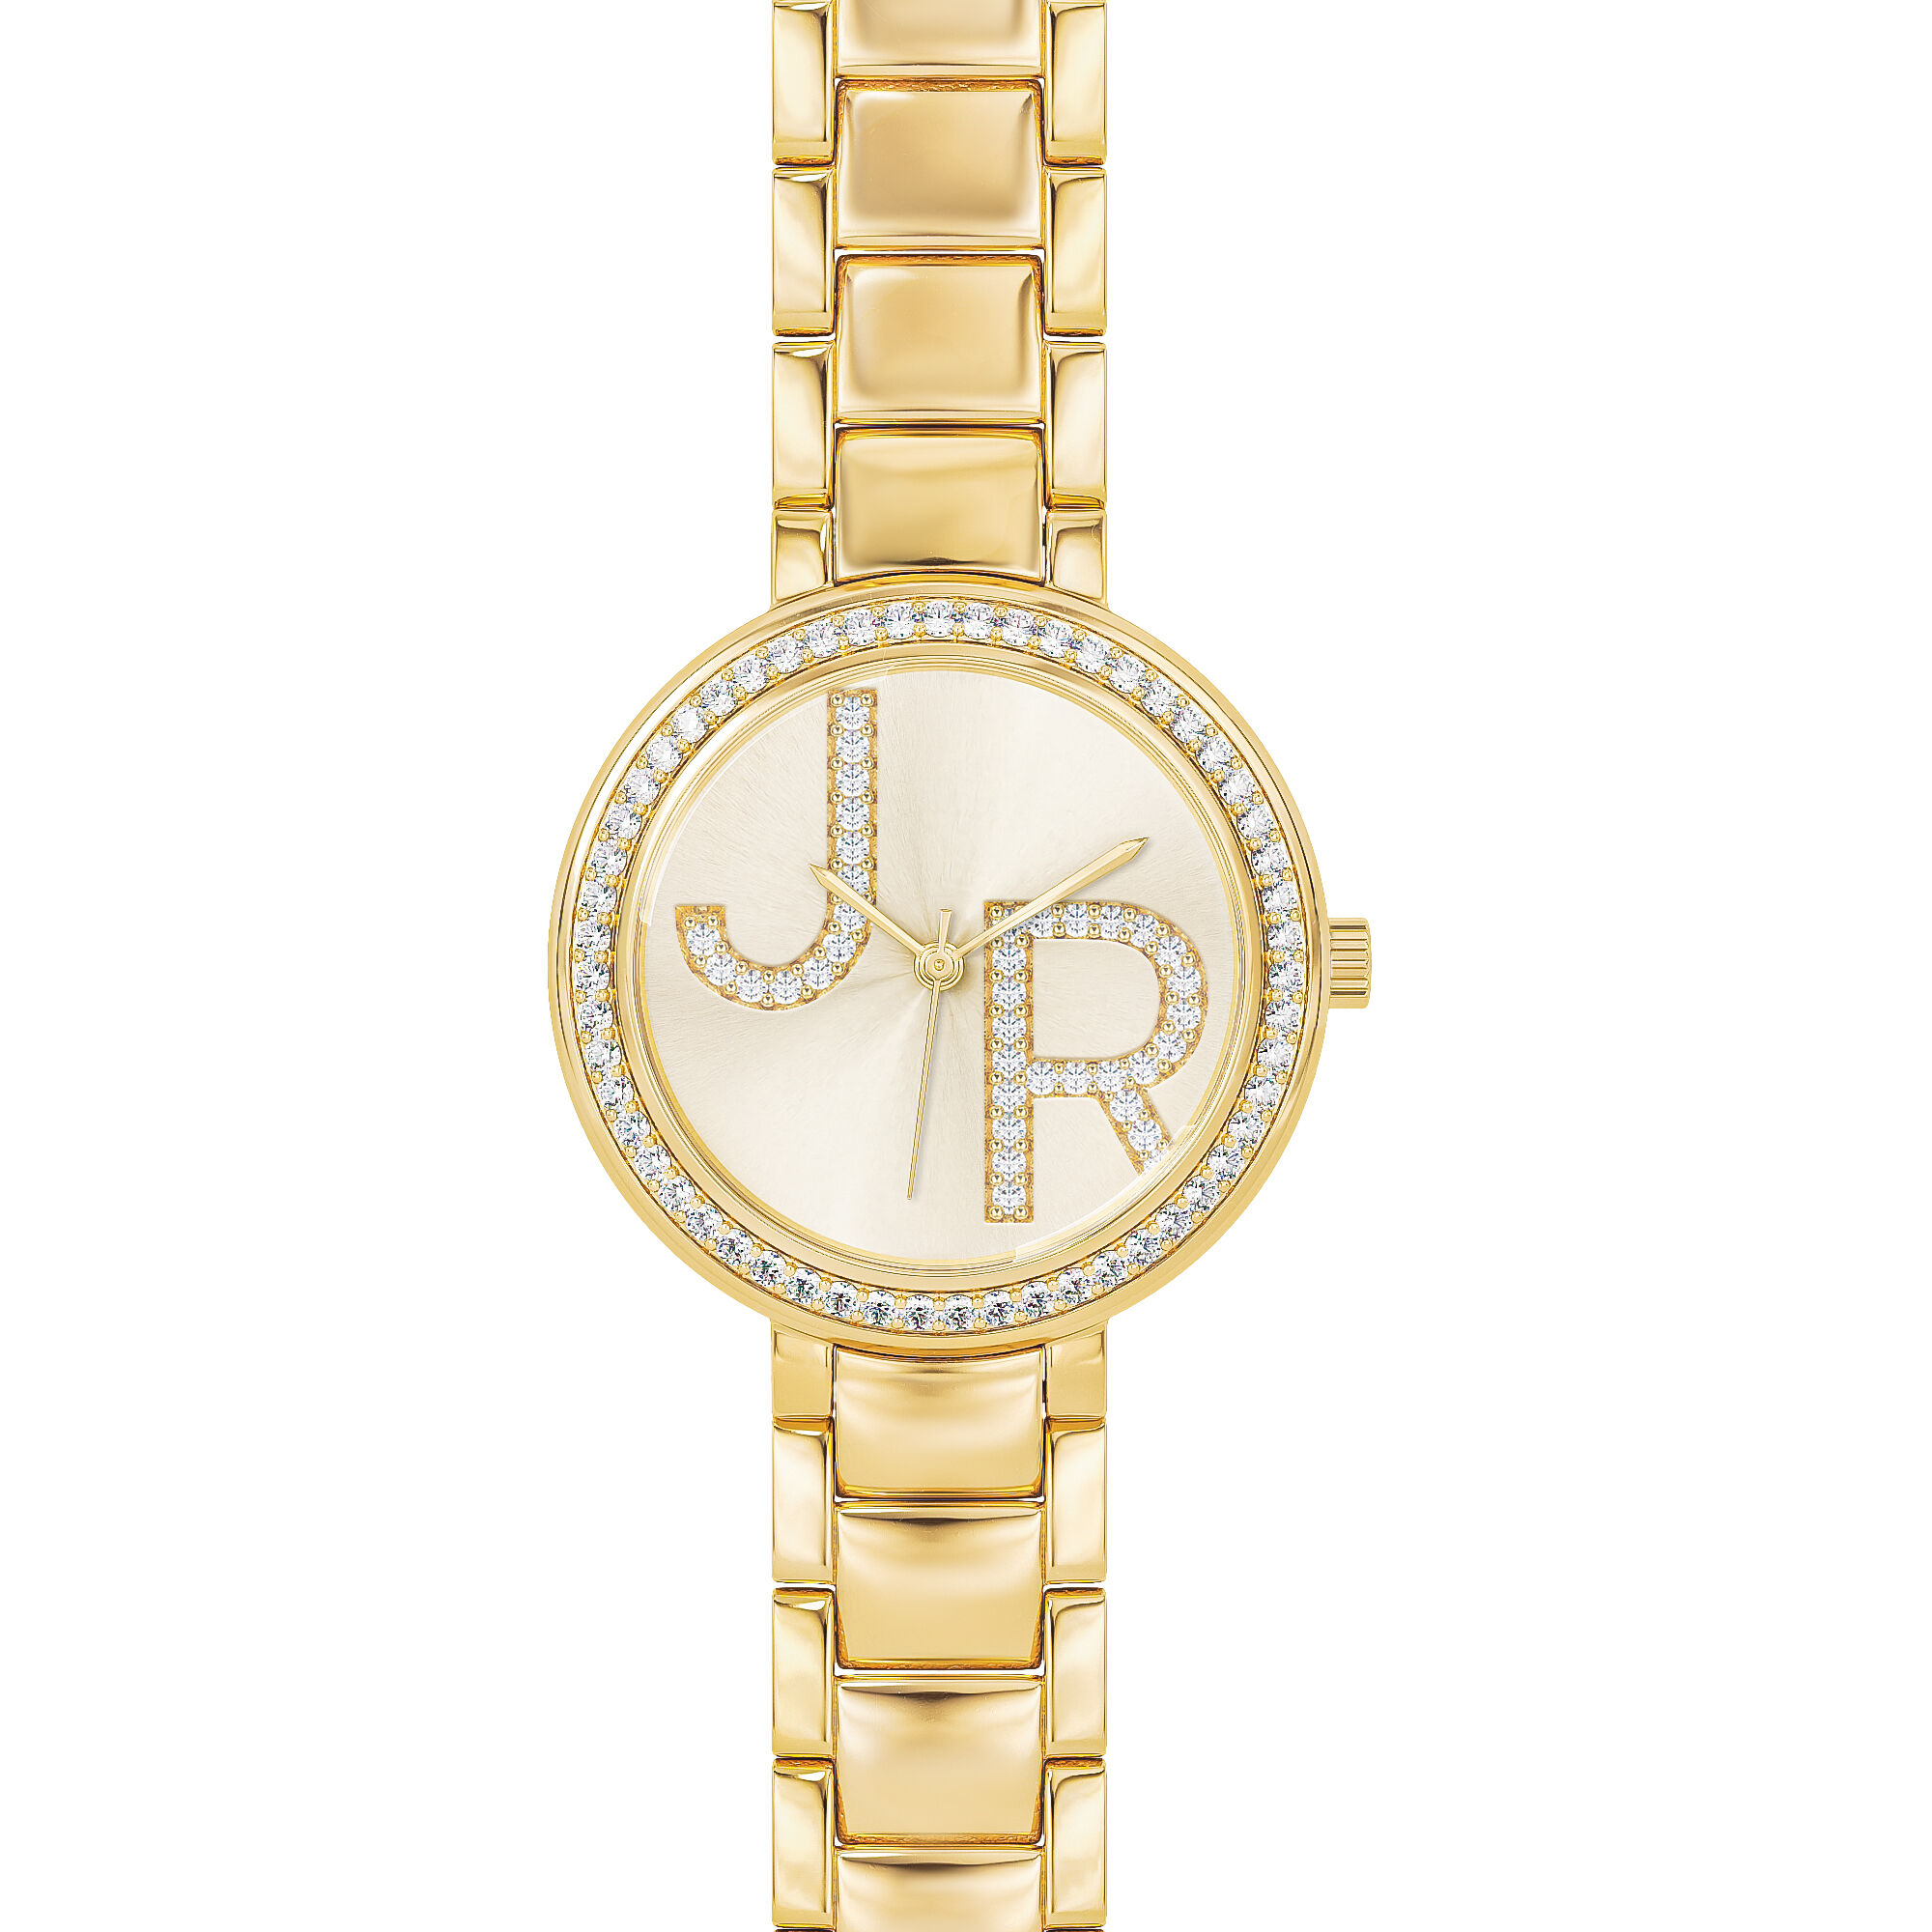 Custom Golden Watch 11196 0019 a main